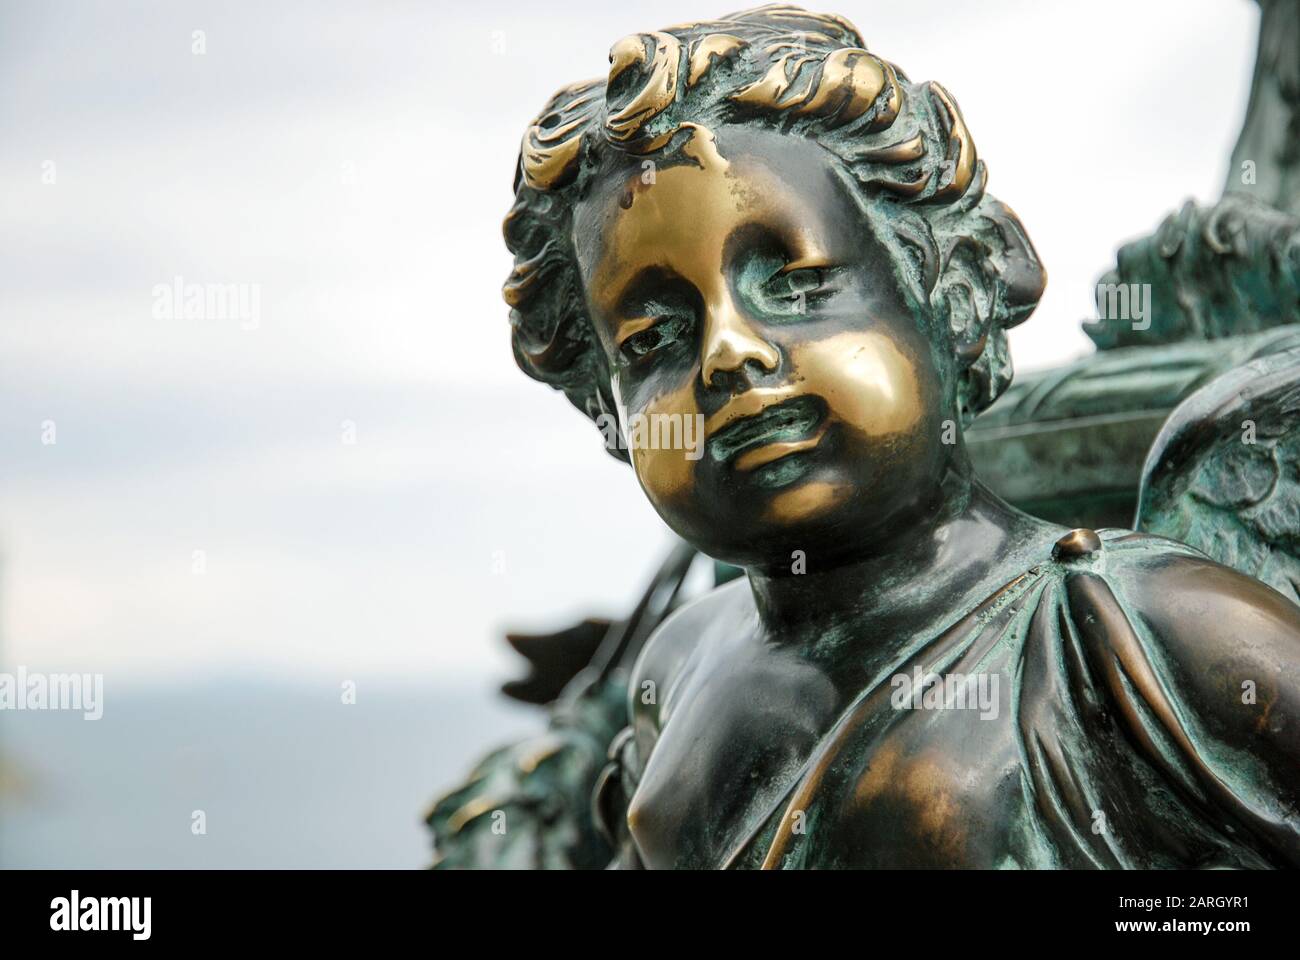 Vecchia statua in bronzo ossidato di un ragazzo con macchie lucidate sul suo viso come simbolo di malattia della pelle, patologia o condizione come vitiligo o psoriasi Foto Stock